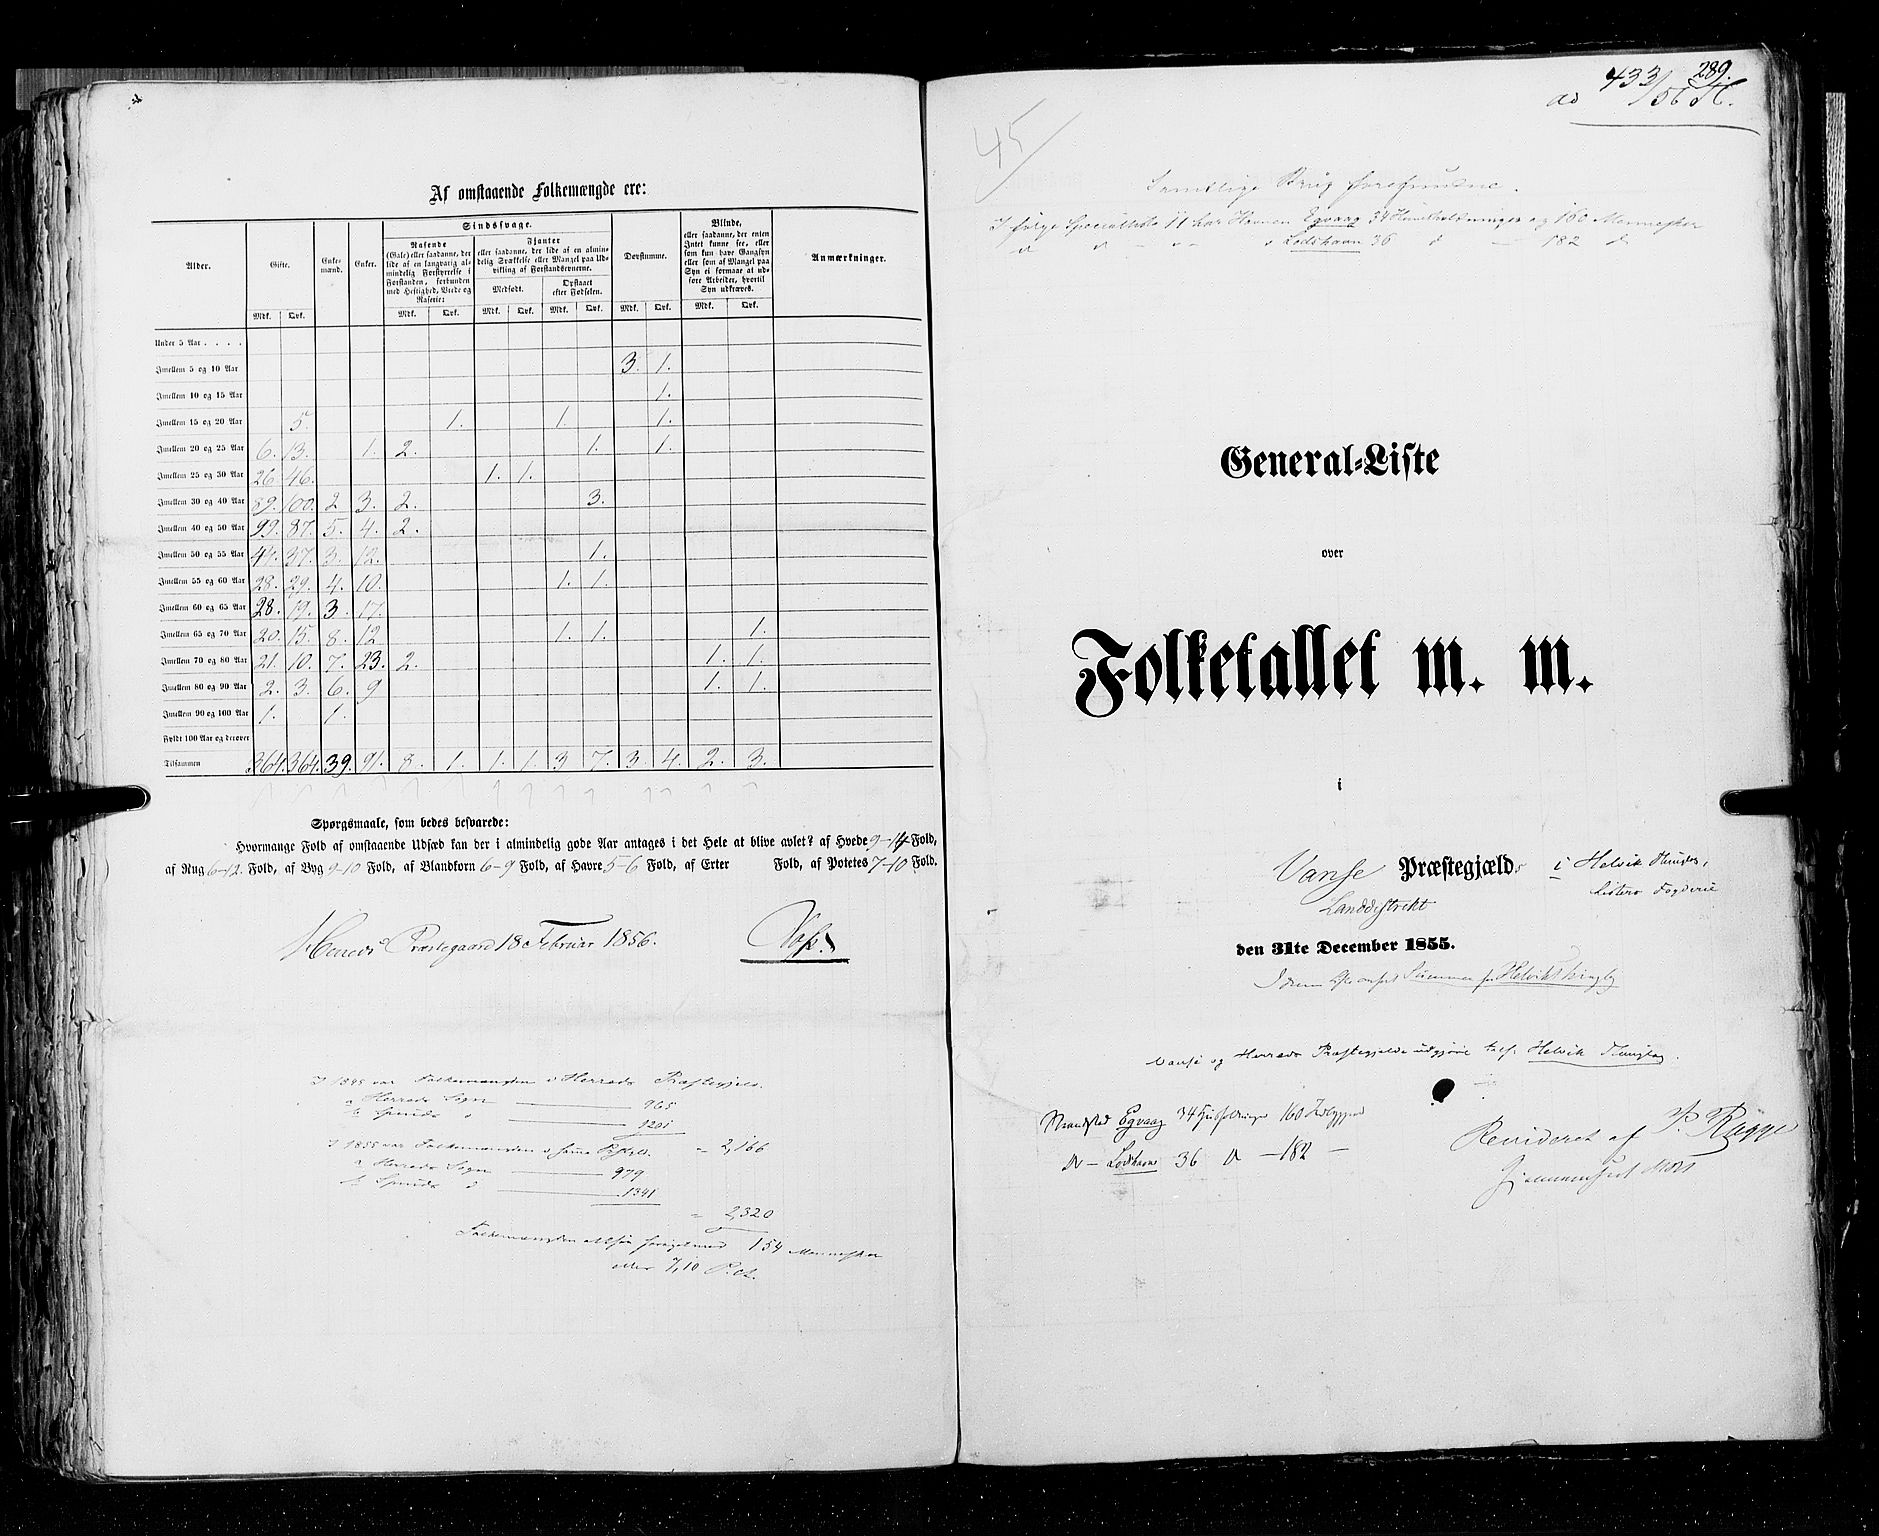 RA, Census 1855, vol. 3: Bratsberg amt, Nedenes amt og Lister og Mandal amt, 1855, p. 289